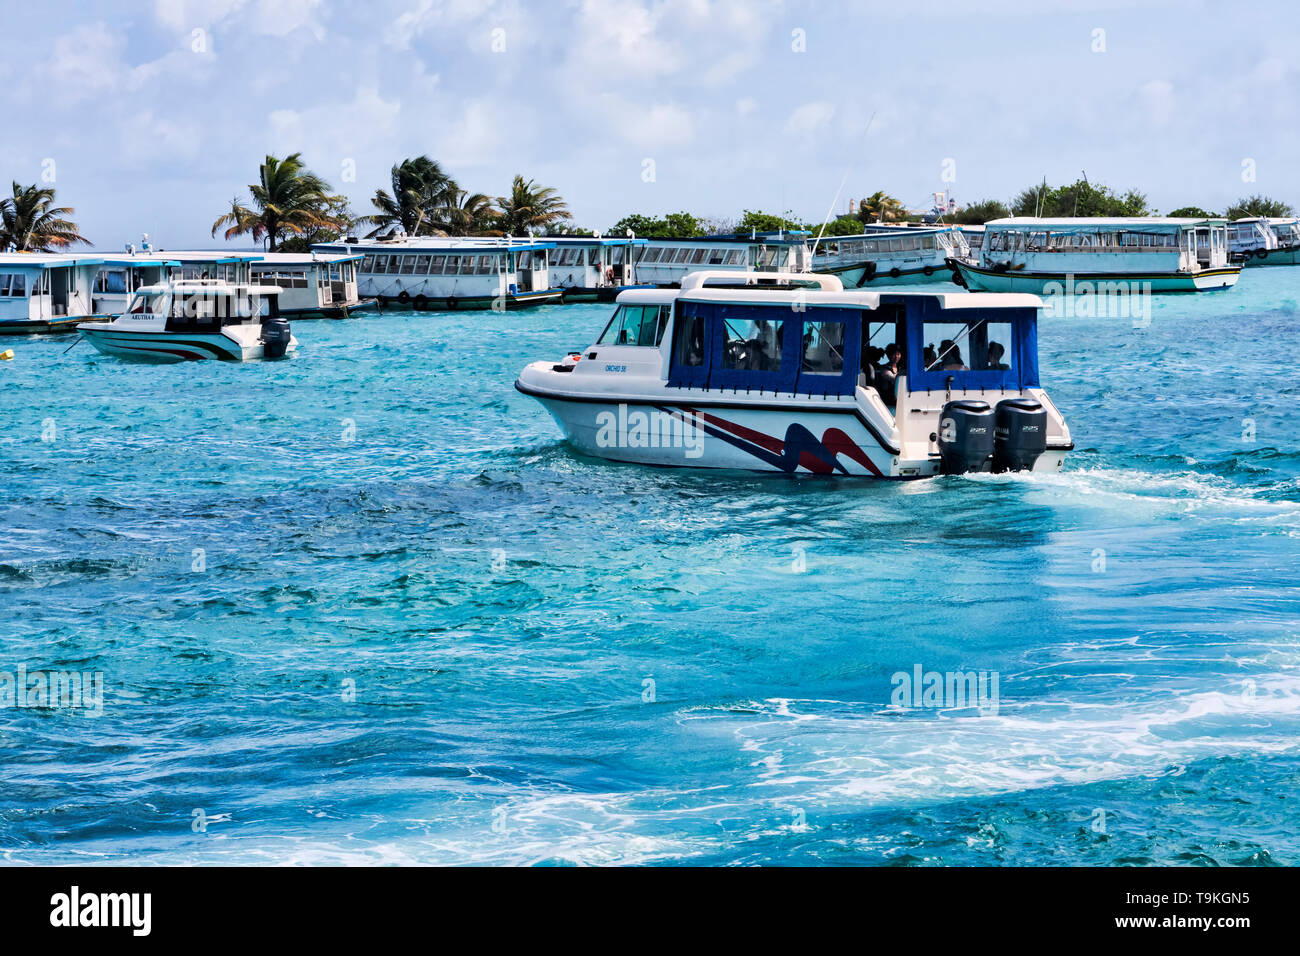 Maschio, Repubblica delle Maldive - Luglio 24, 2016 :il porto di Malè, vittime della tratta di esseri umani da numerose barche usate per il trasporto e gite turistiche nei dintorni di isl Foto Stock